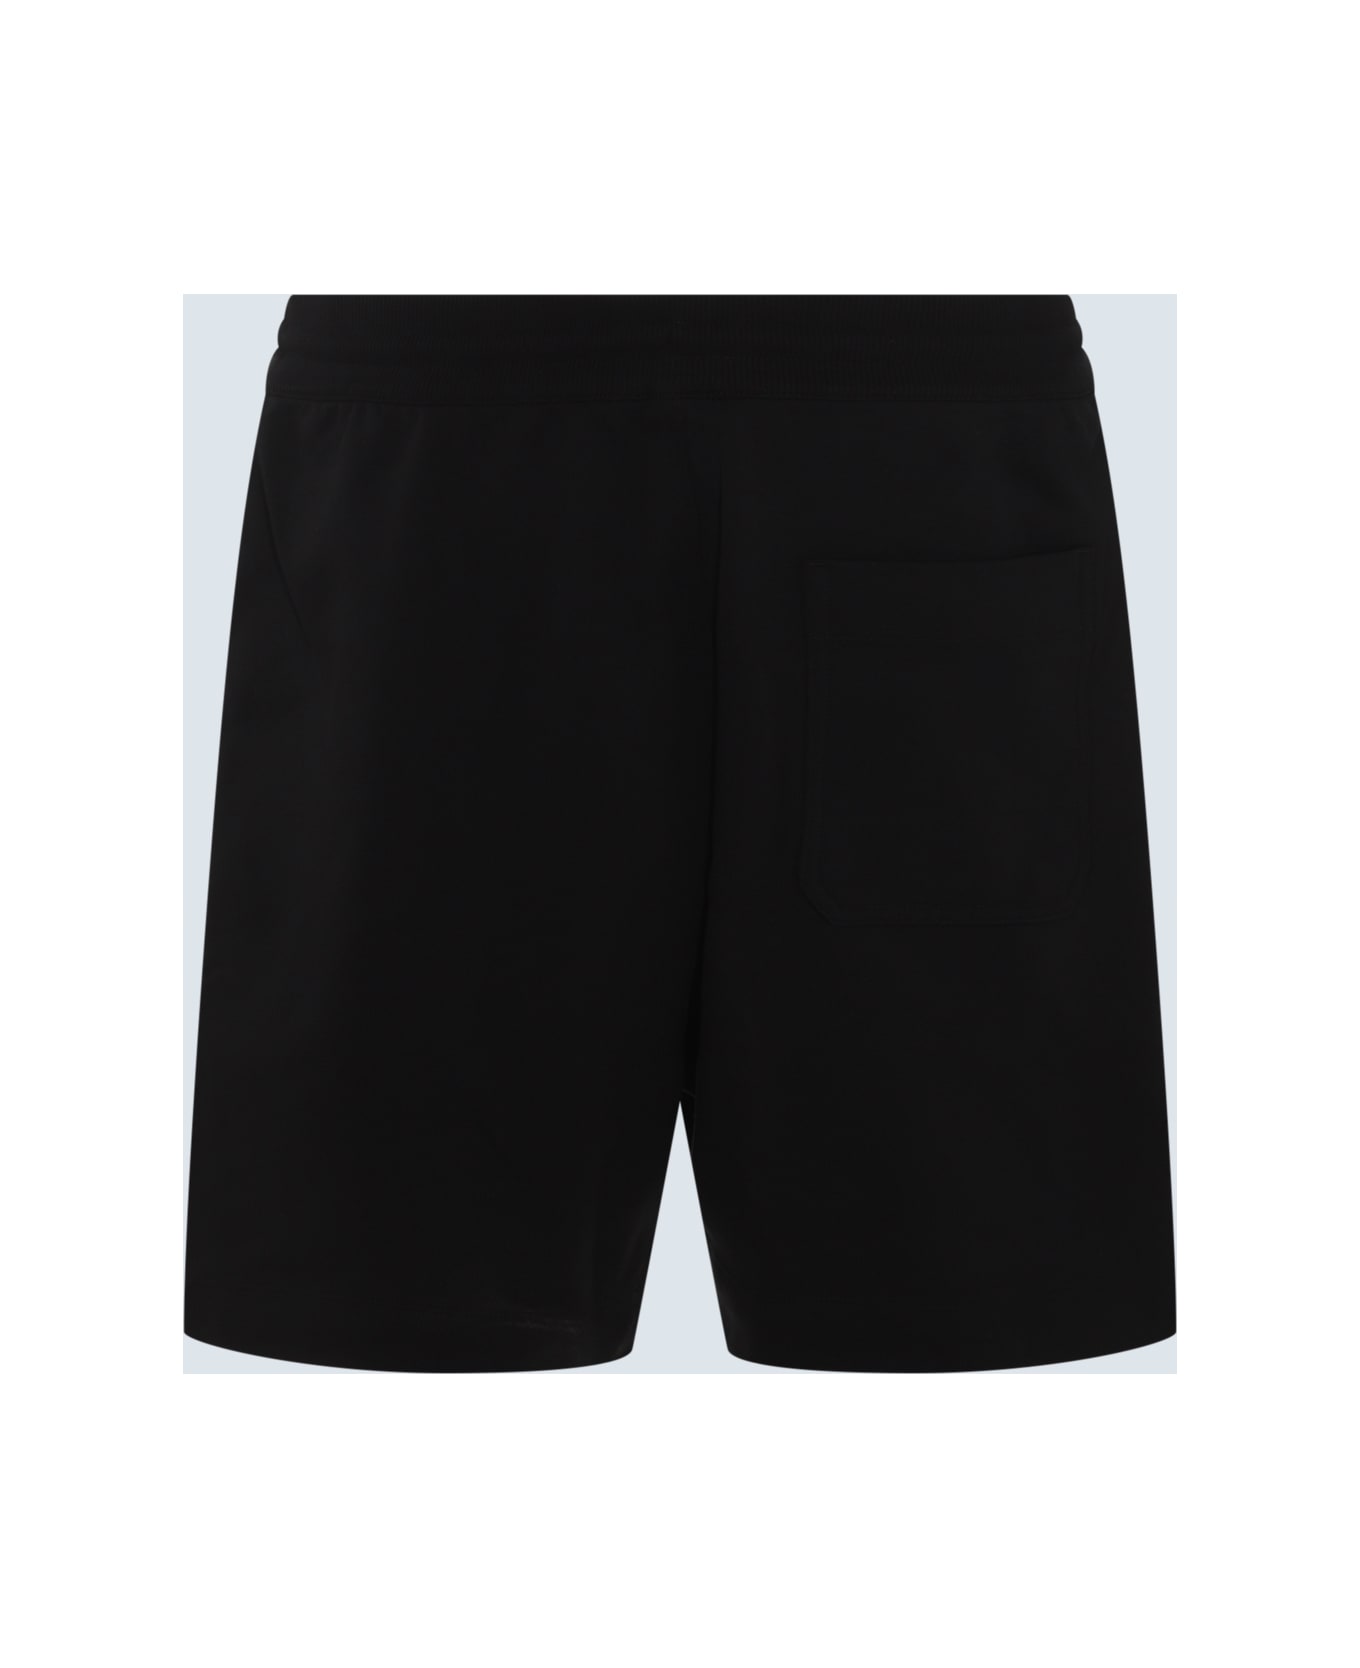 Y-3 Black Cotton Blend Shorts - Black